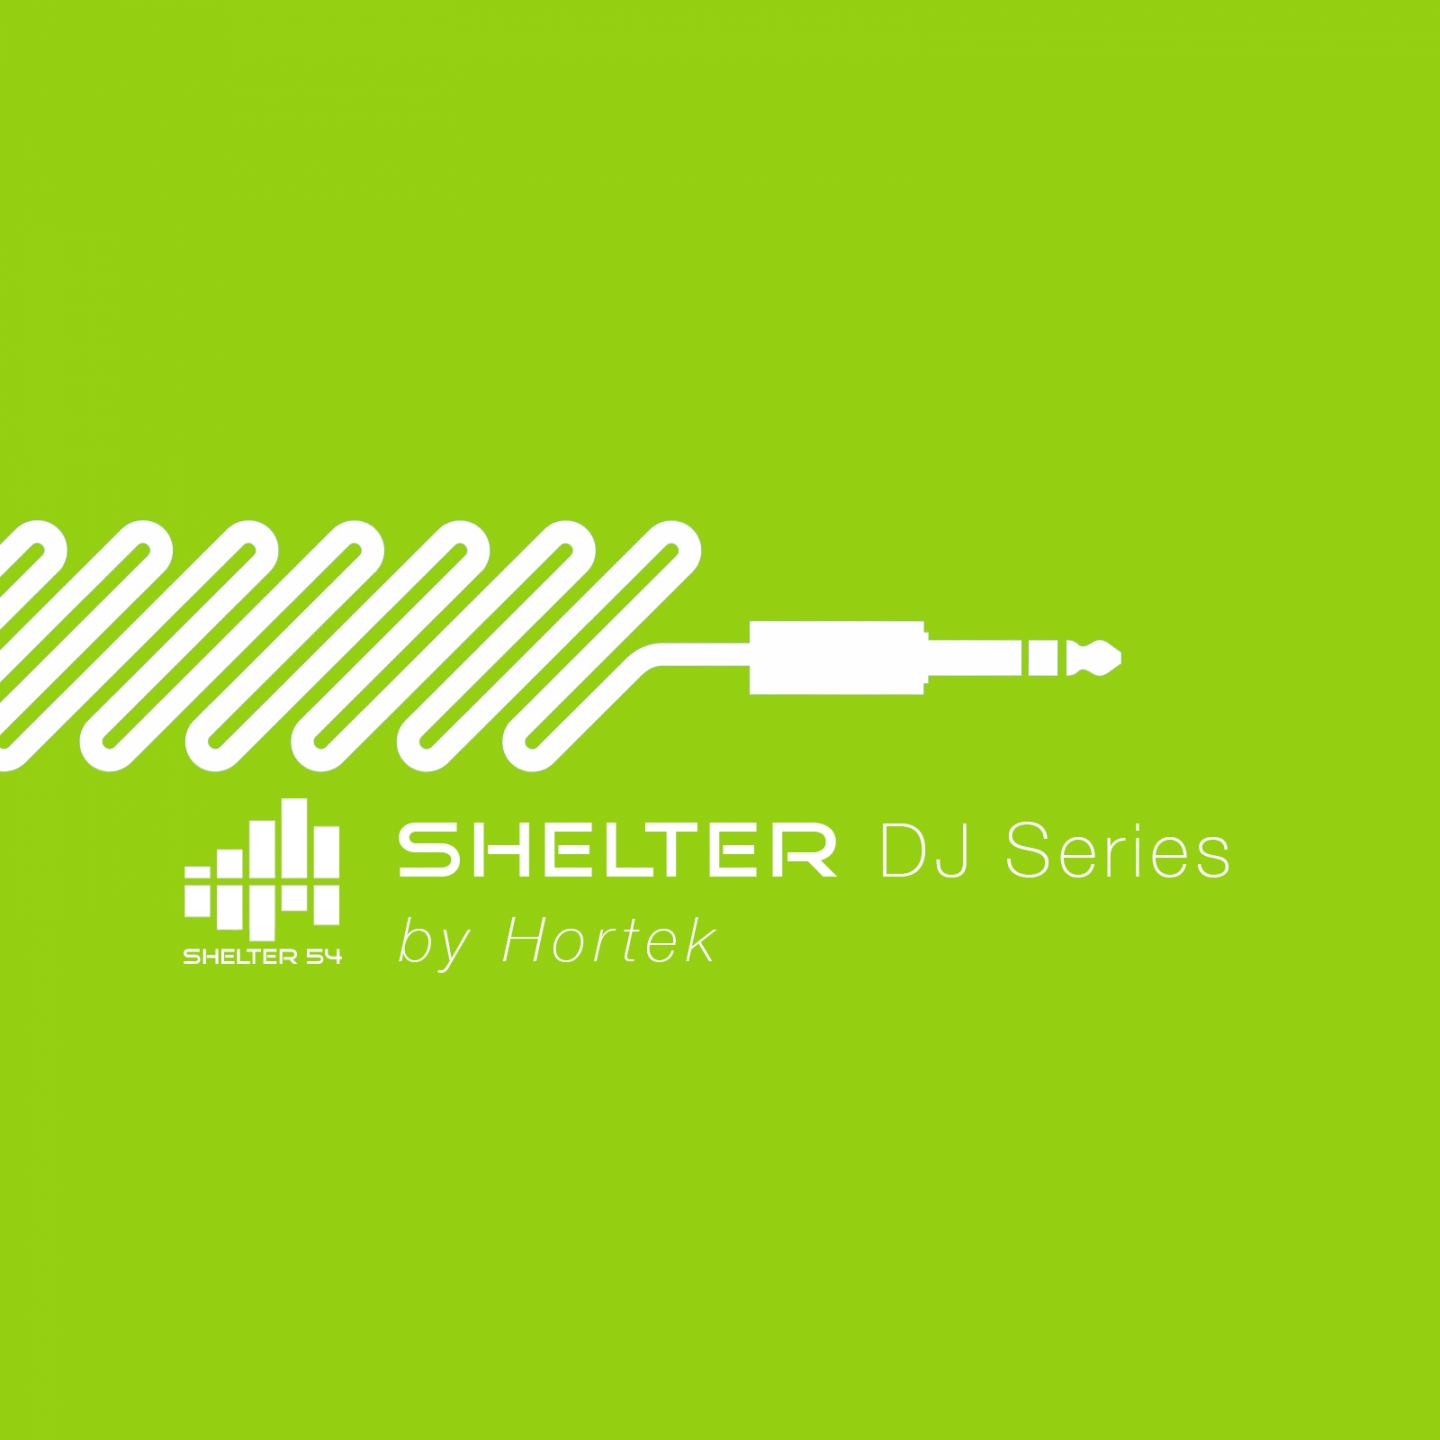 Shelter 54 DJ Series by Hortek